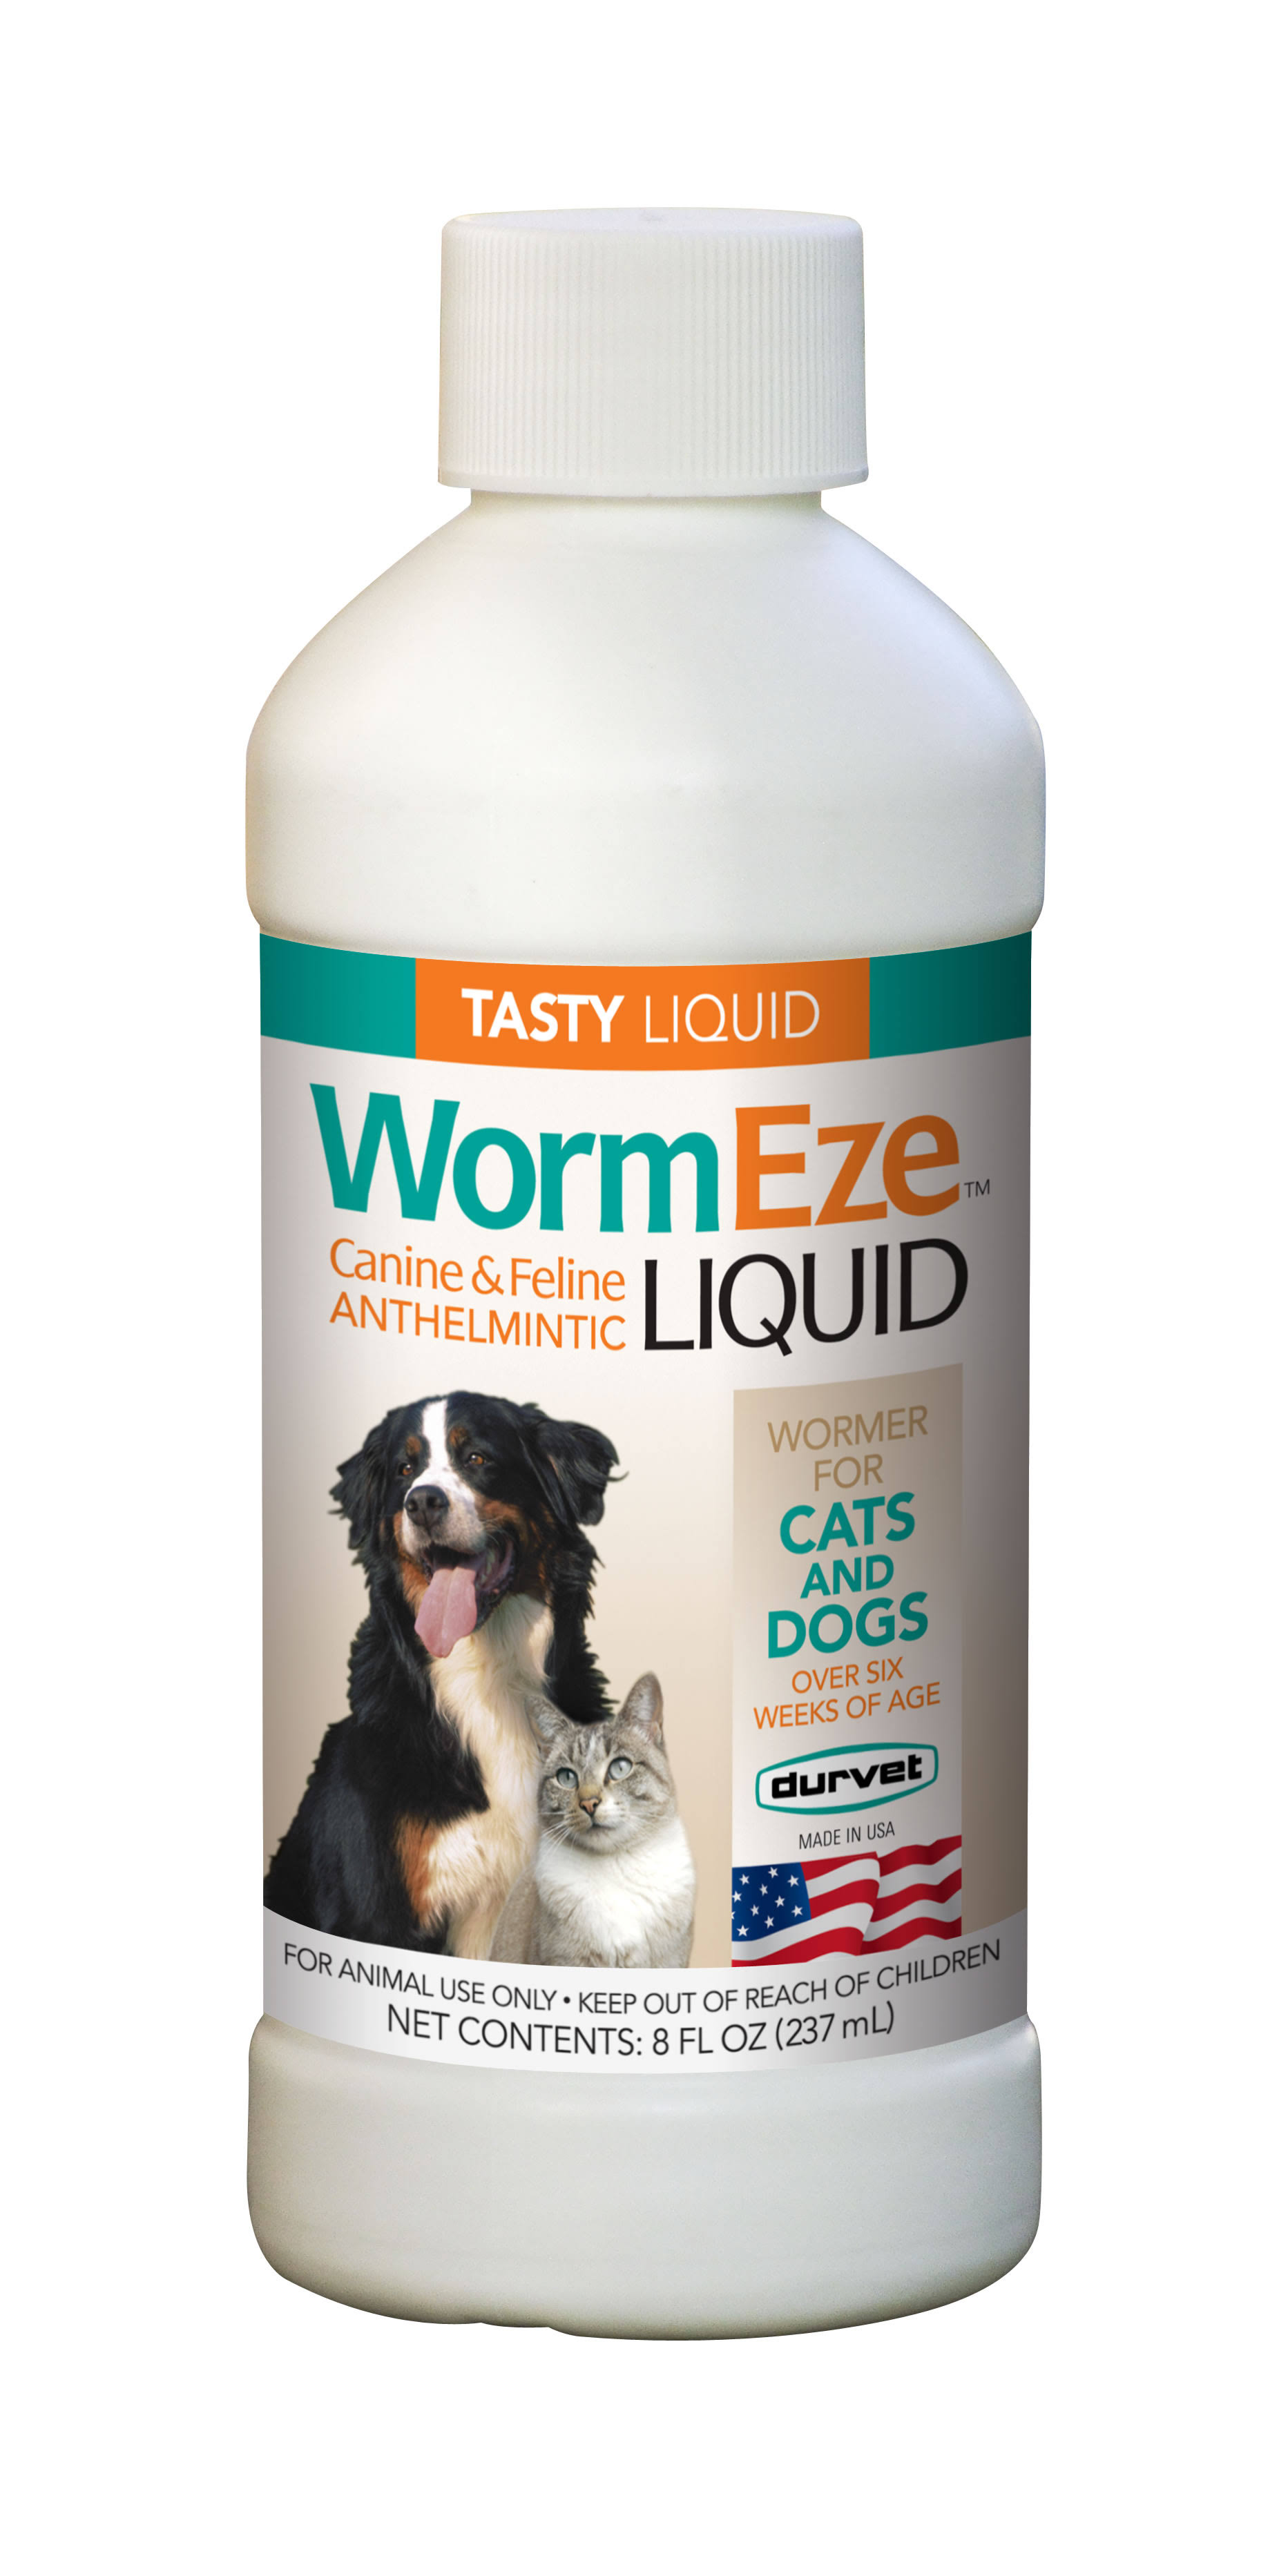 Durvet WormEze Liquid Canine & Feline Antihelmintic Liquid - 8oz